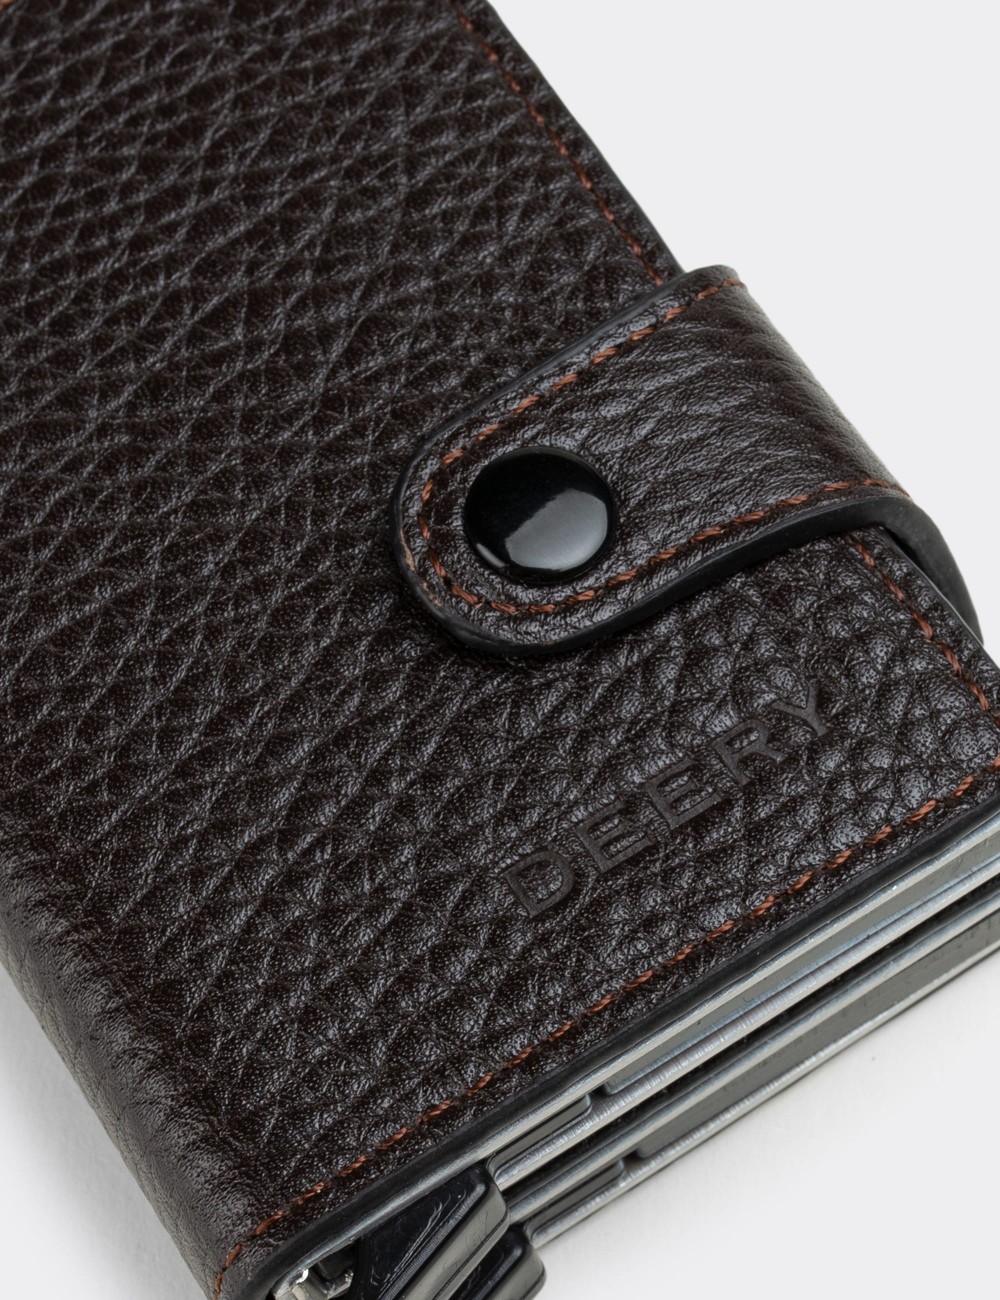  Leather Brown Men's Wallet - 00660MKHVZ01